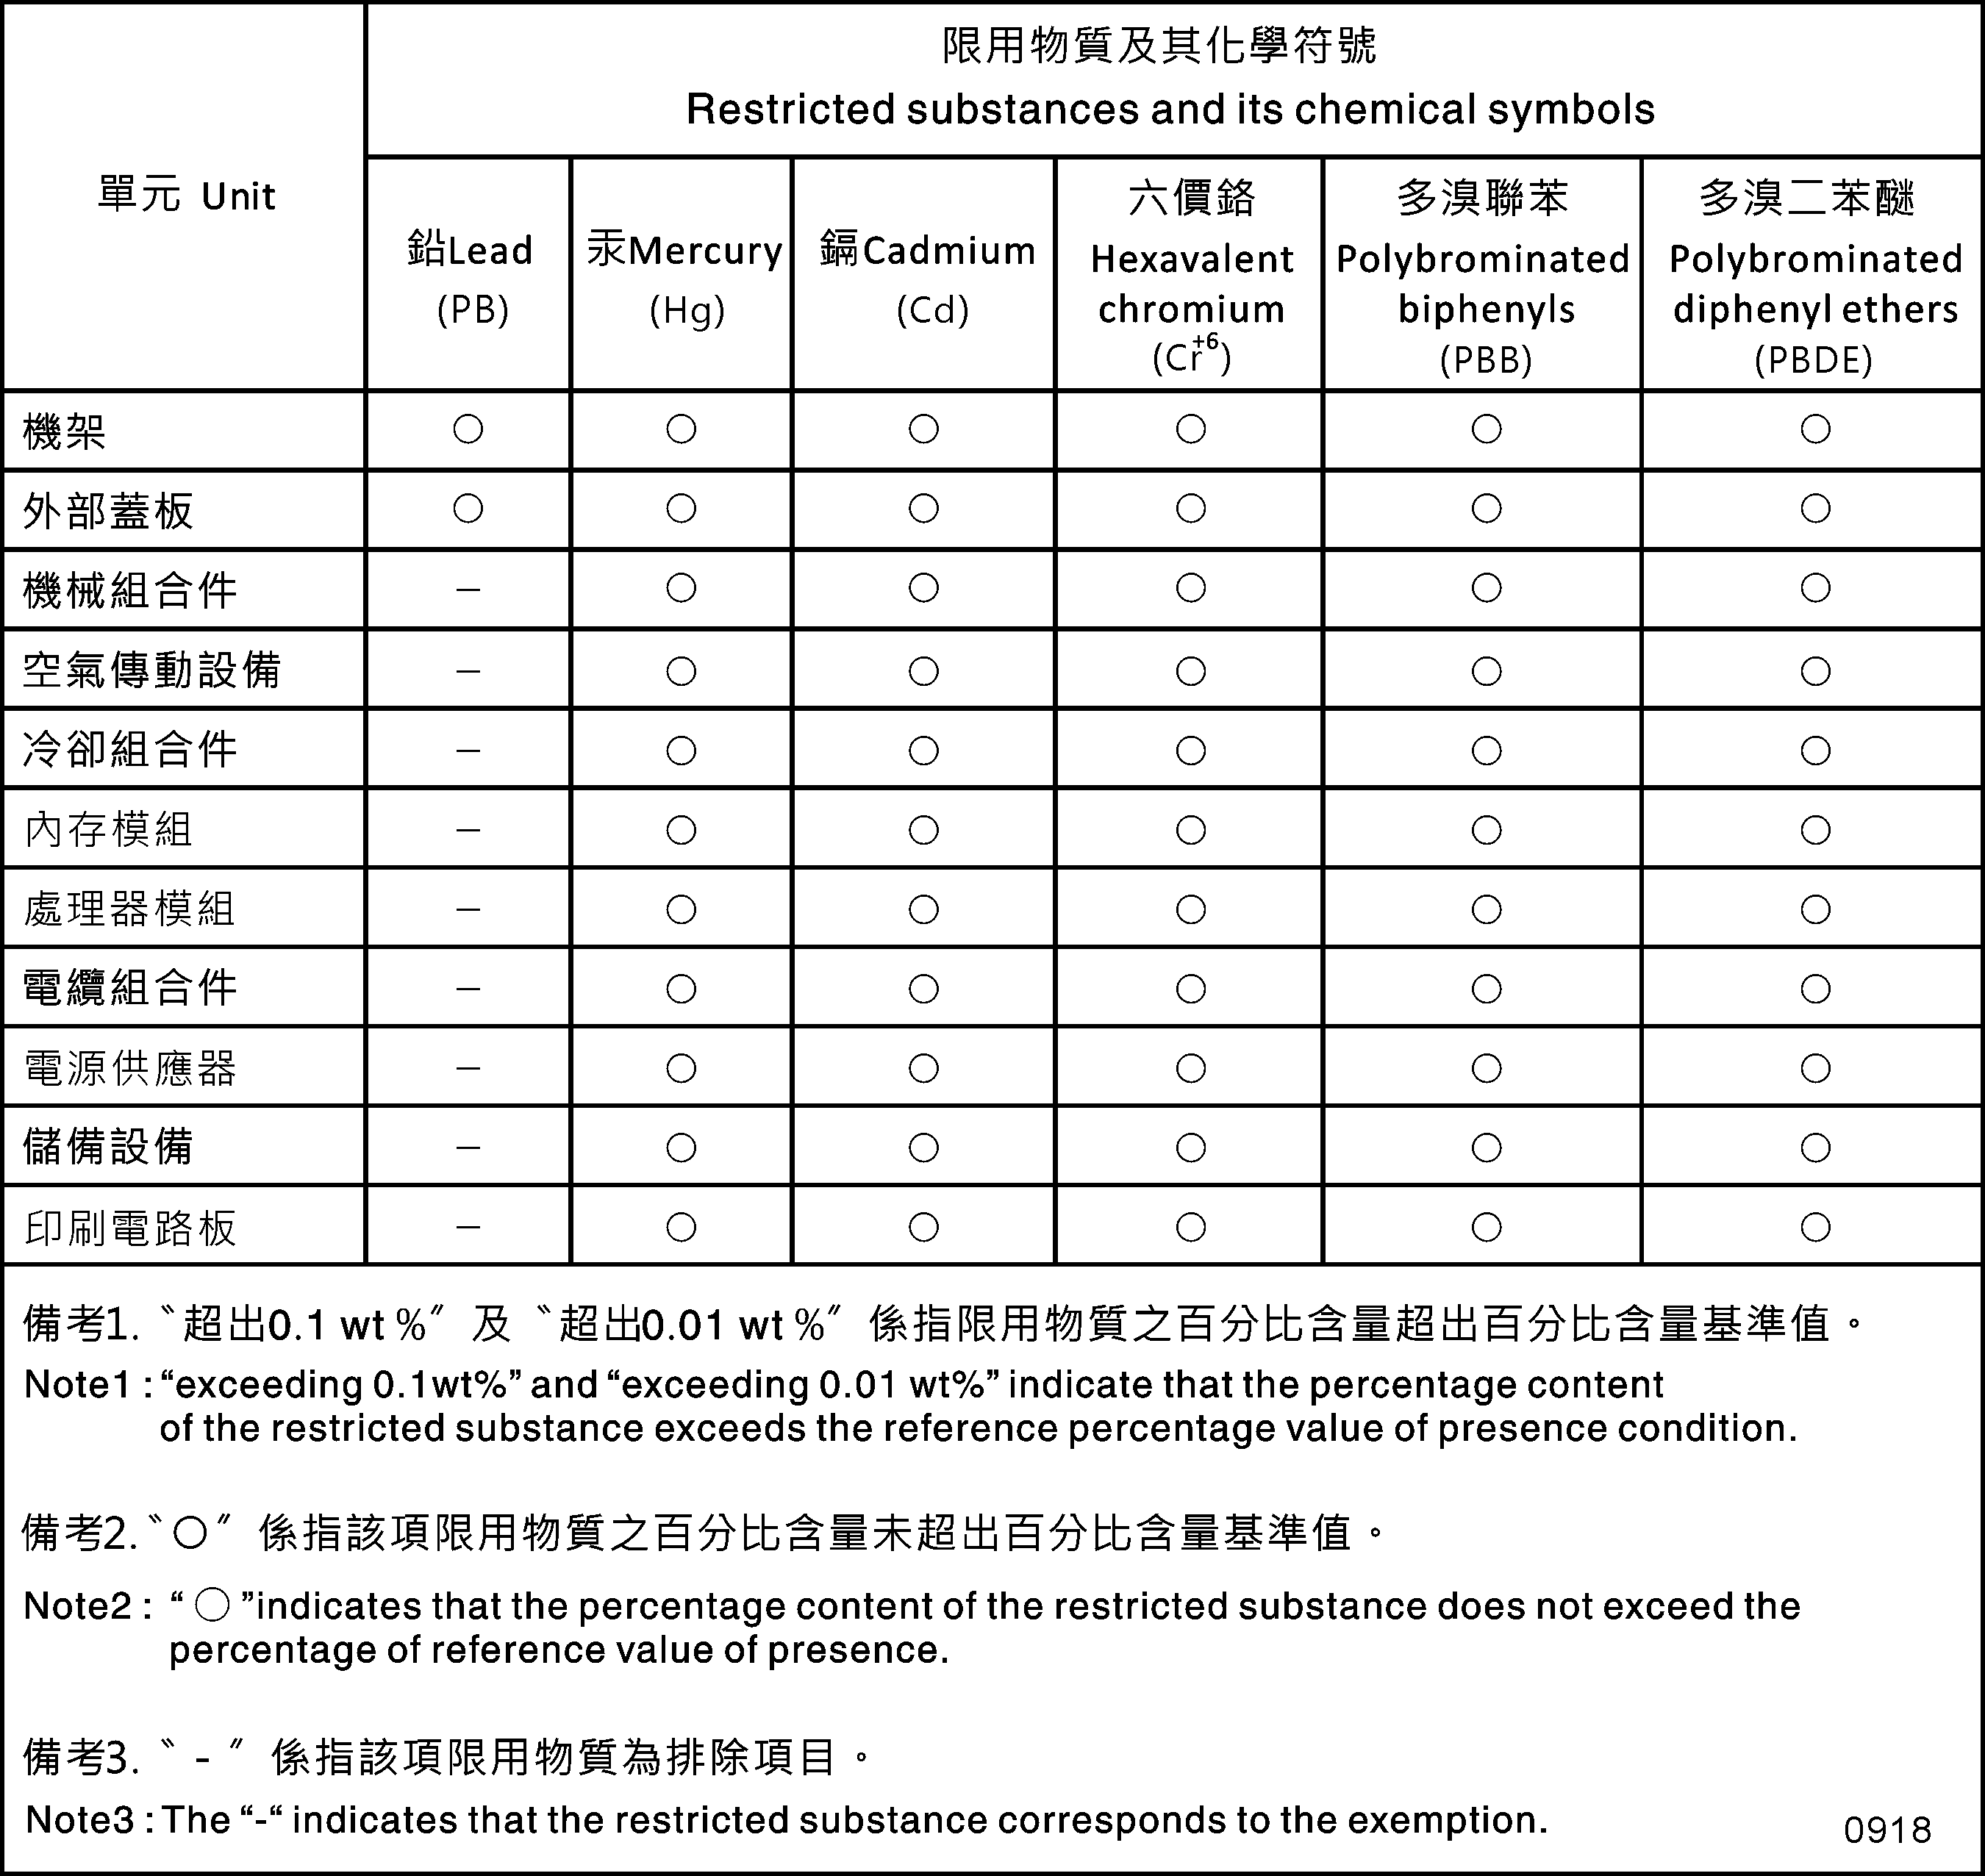 Taiwan Region BSMI RoHS declaration